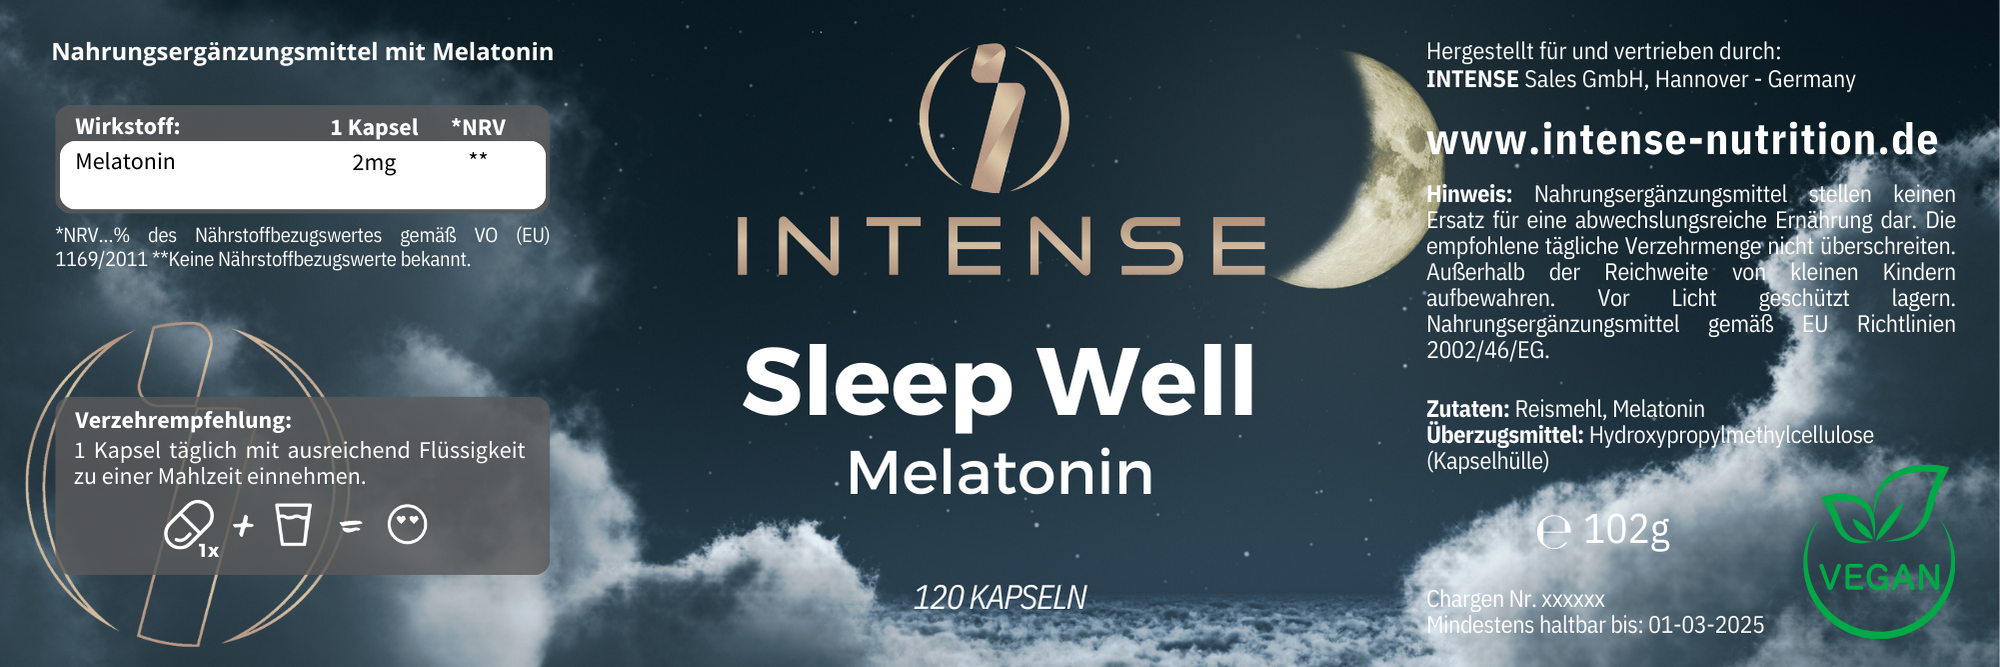 INTENSE - Sleep Well Melatonin